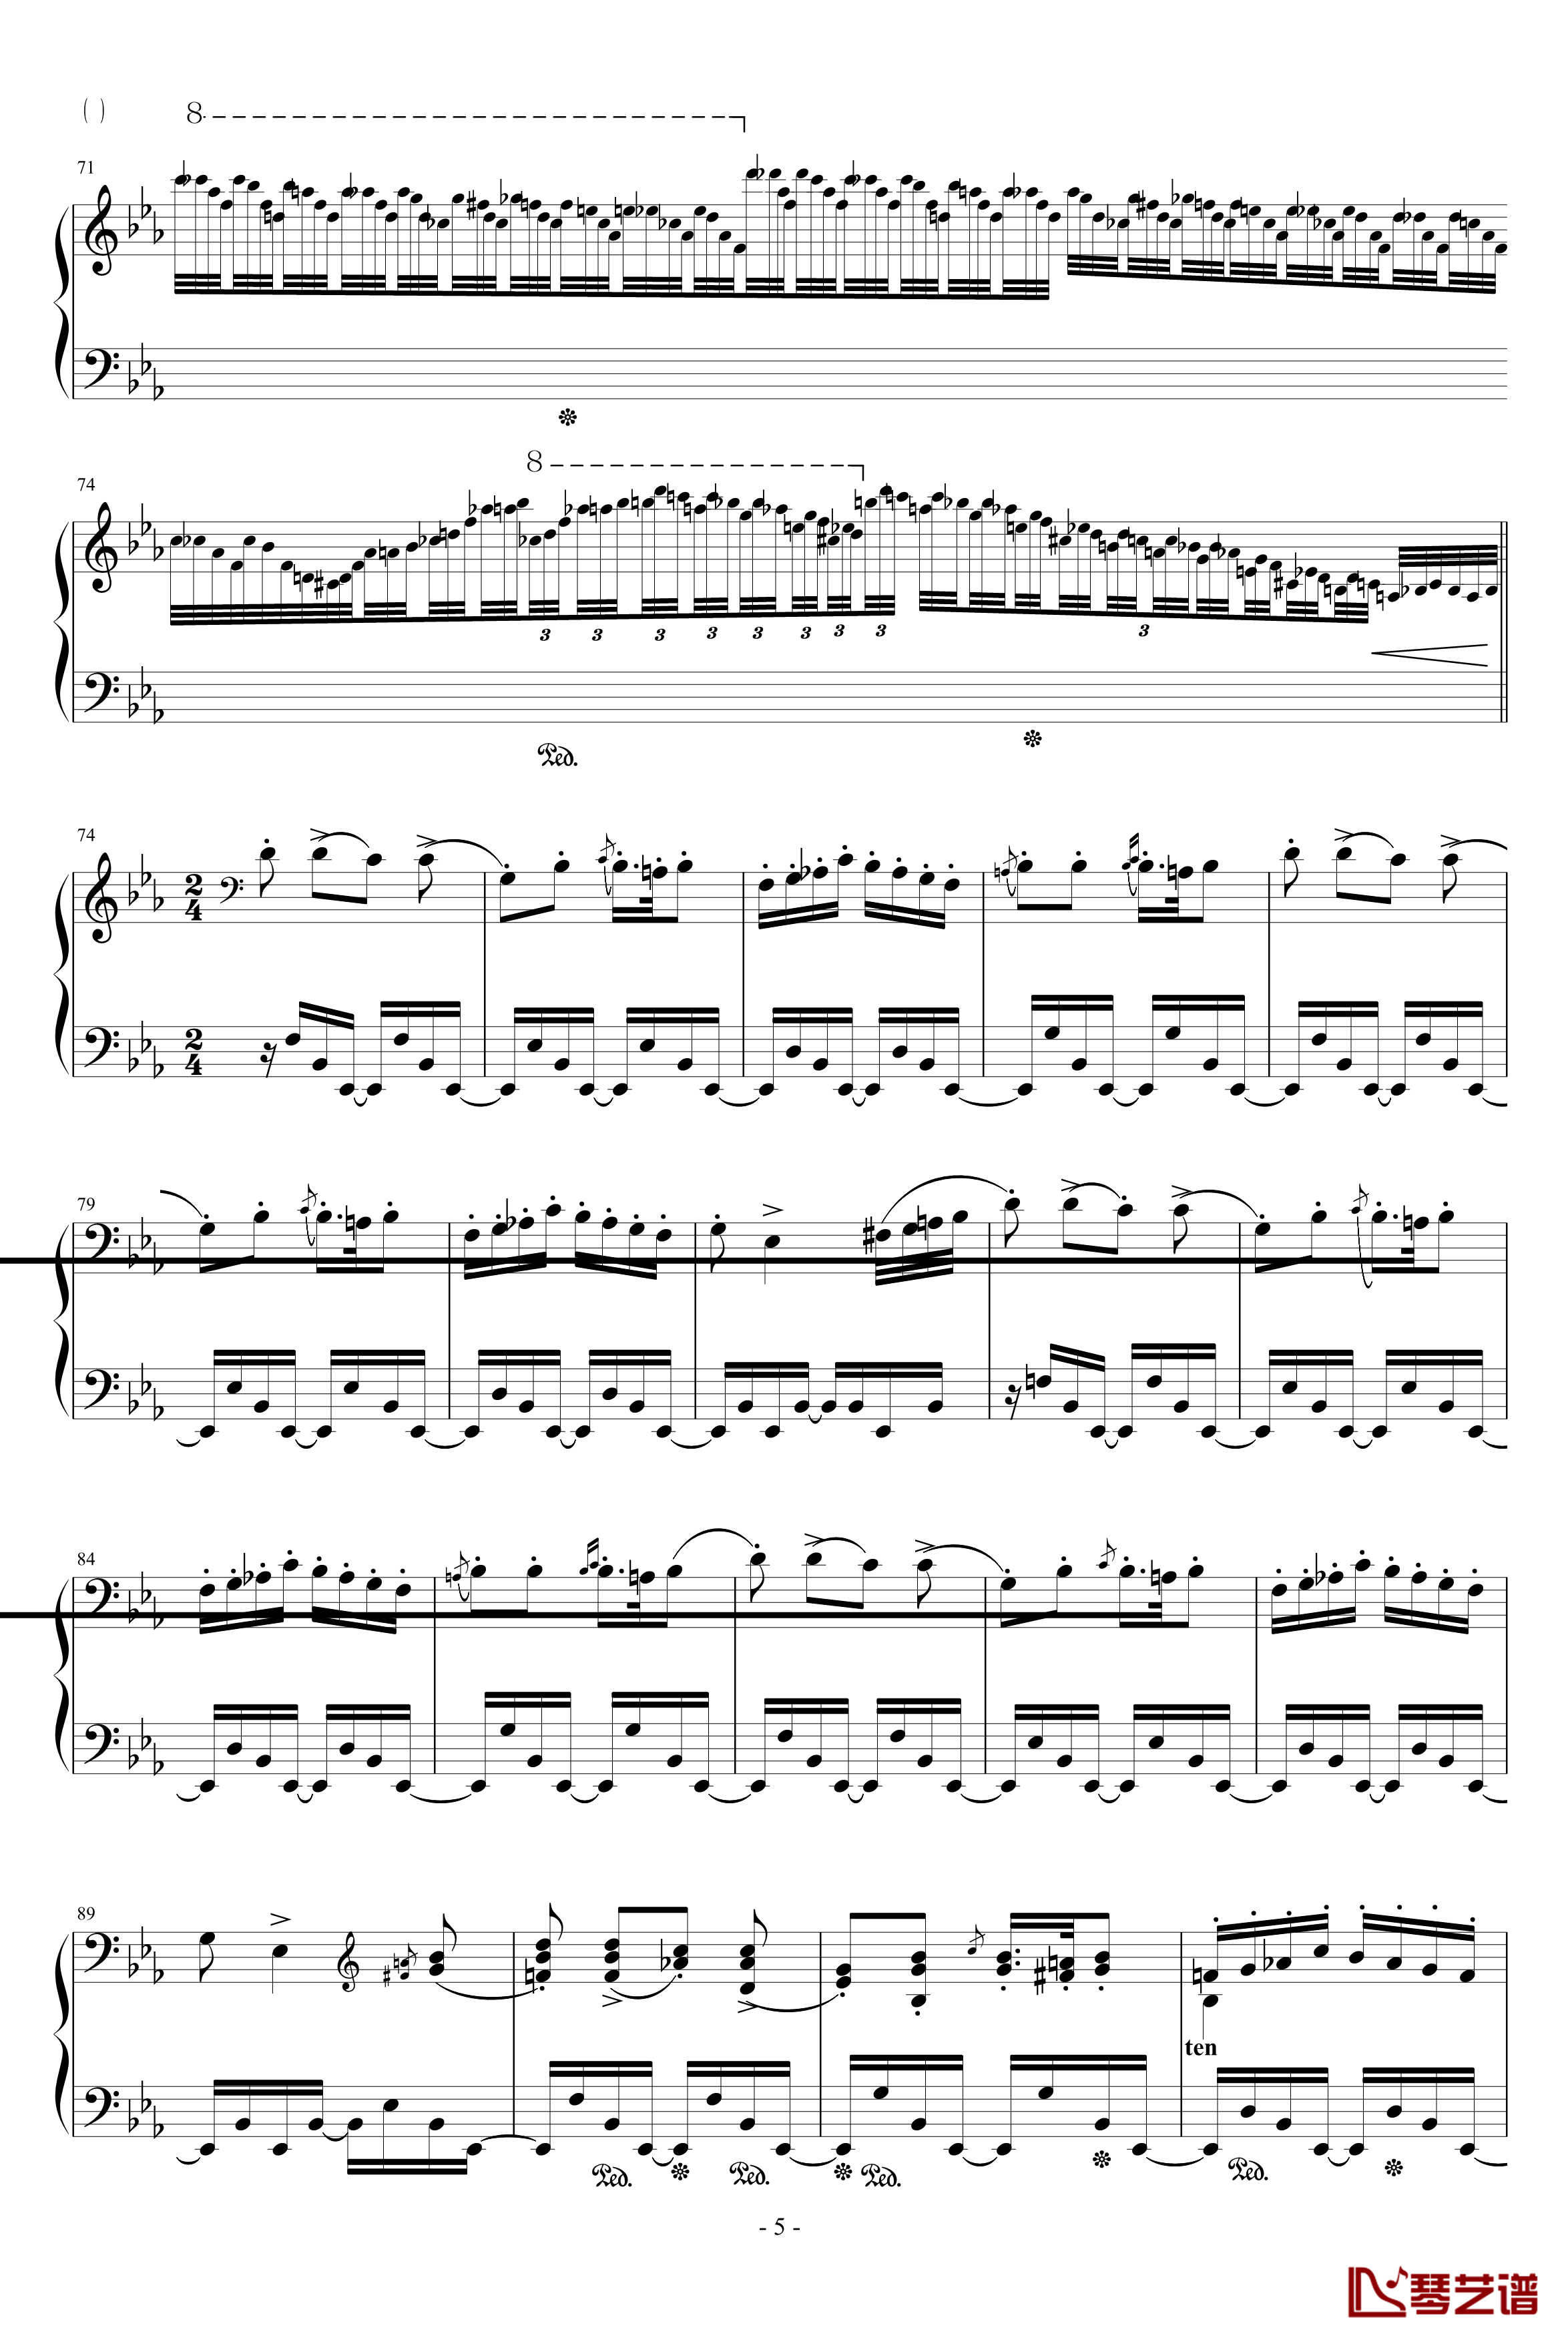 匈牙利狂想曲第9号钢琴谱-19首匈狂里篇幅最浩大、技巧最艰深的作品之一-李斯特5